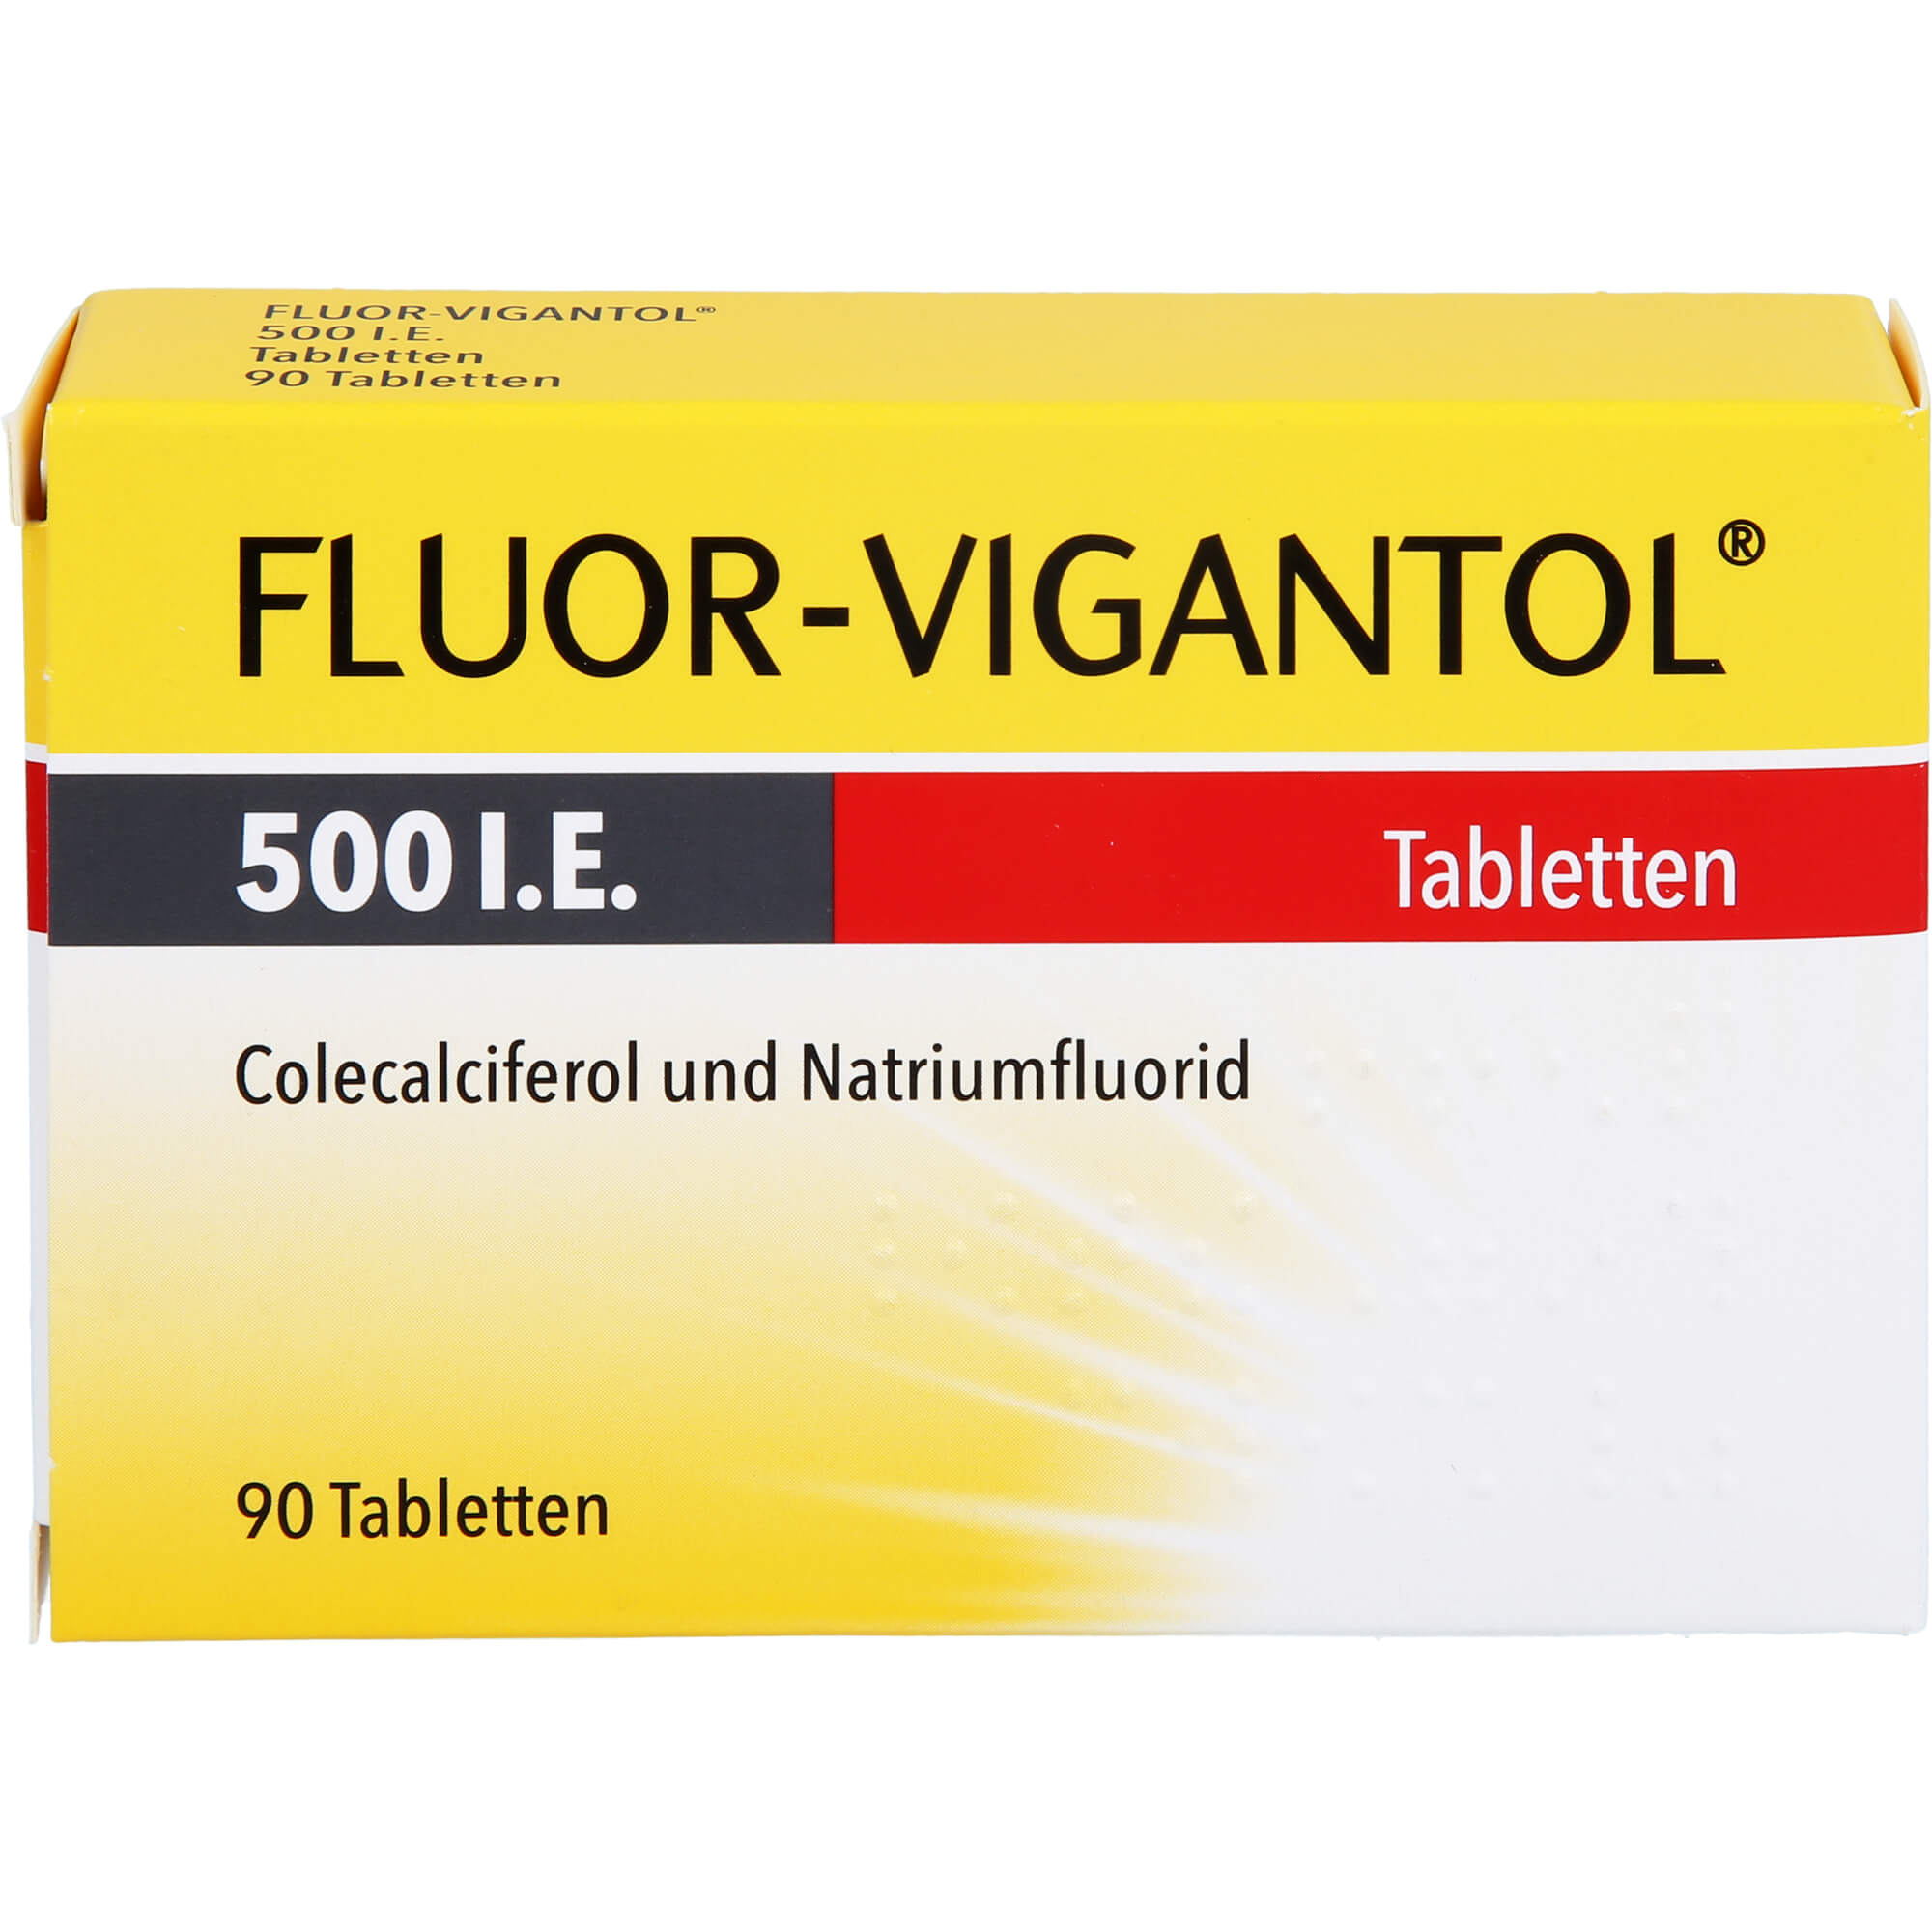 FLUOR VIGANTOL 500 I.E. Tabletten